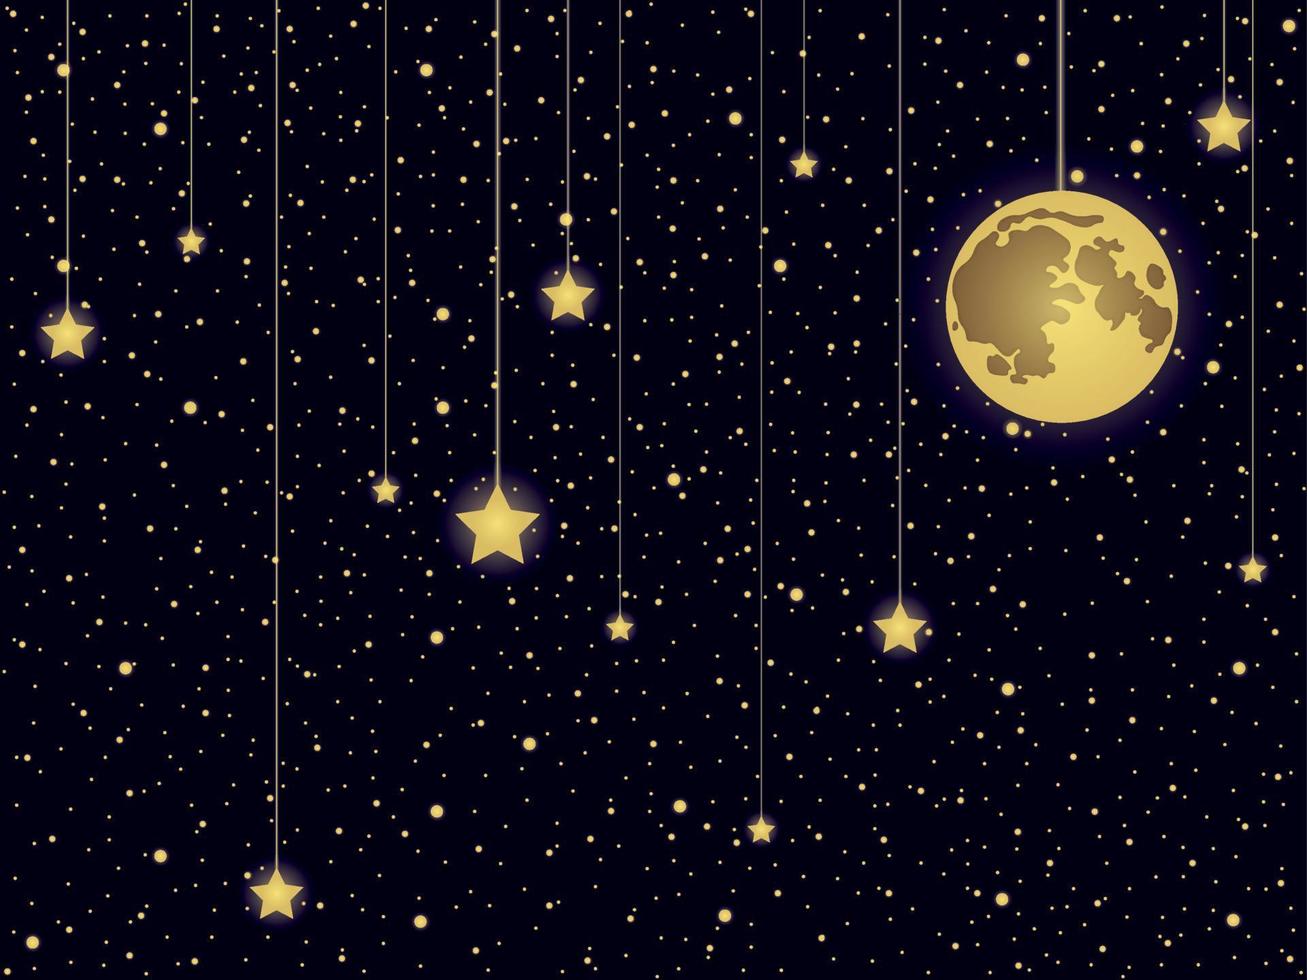 estrela dourada abstrata e ilustração vetorial de fundo do céu de lua cheia vetor